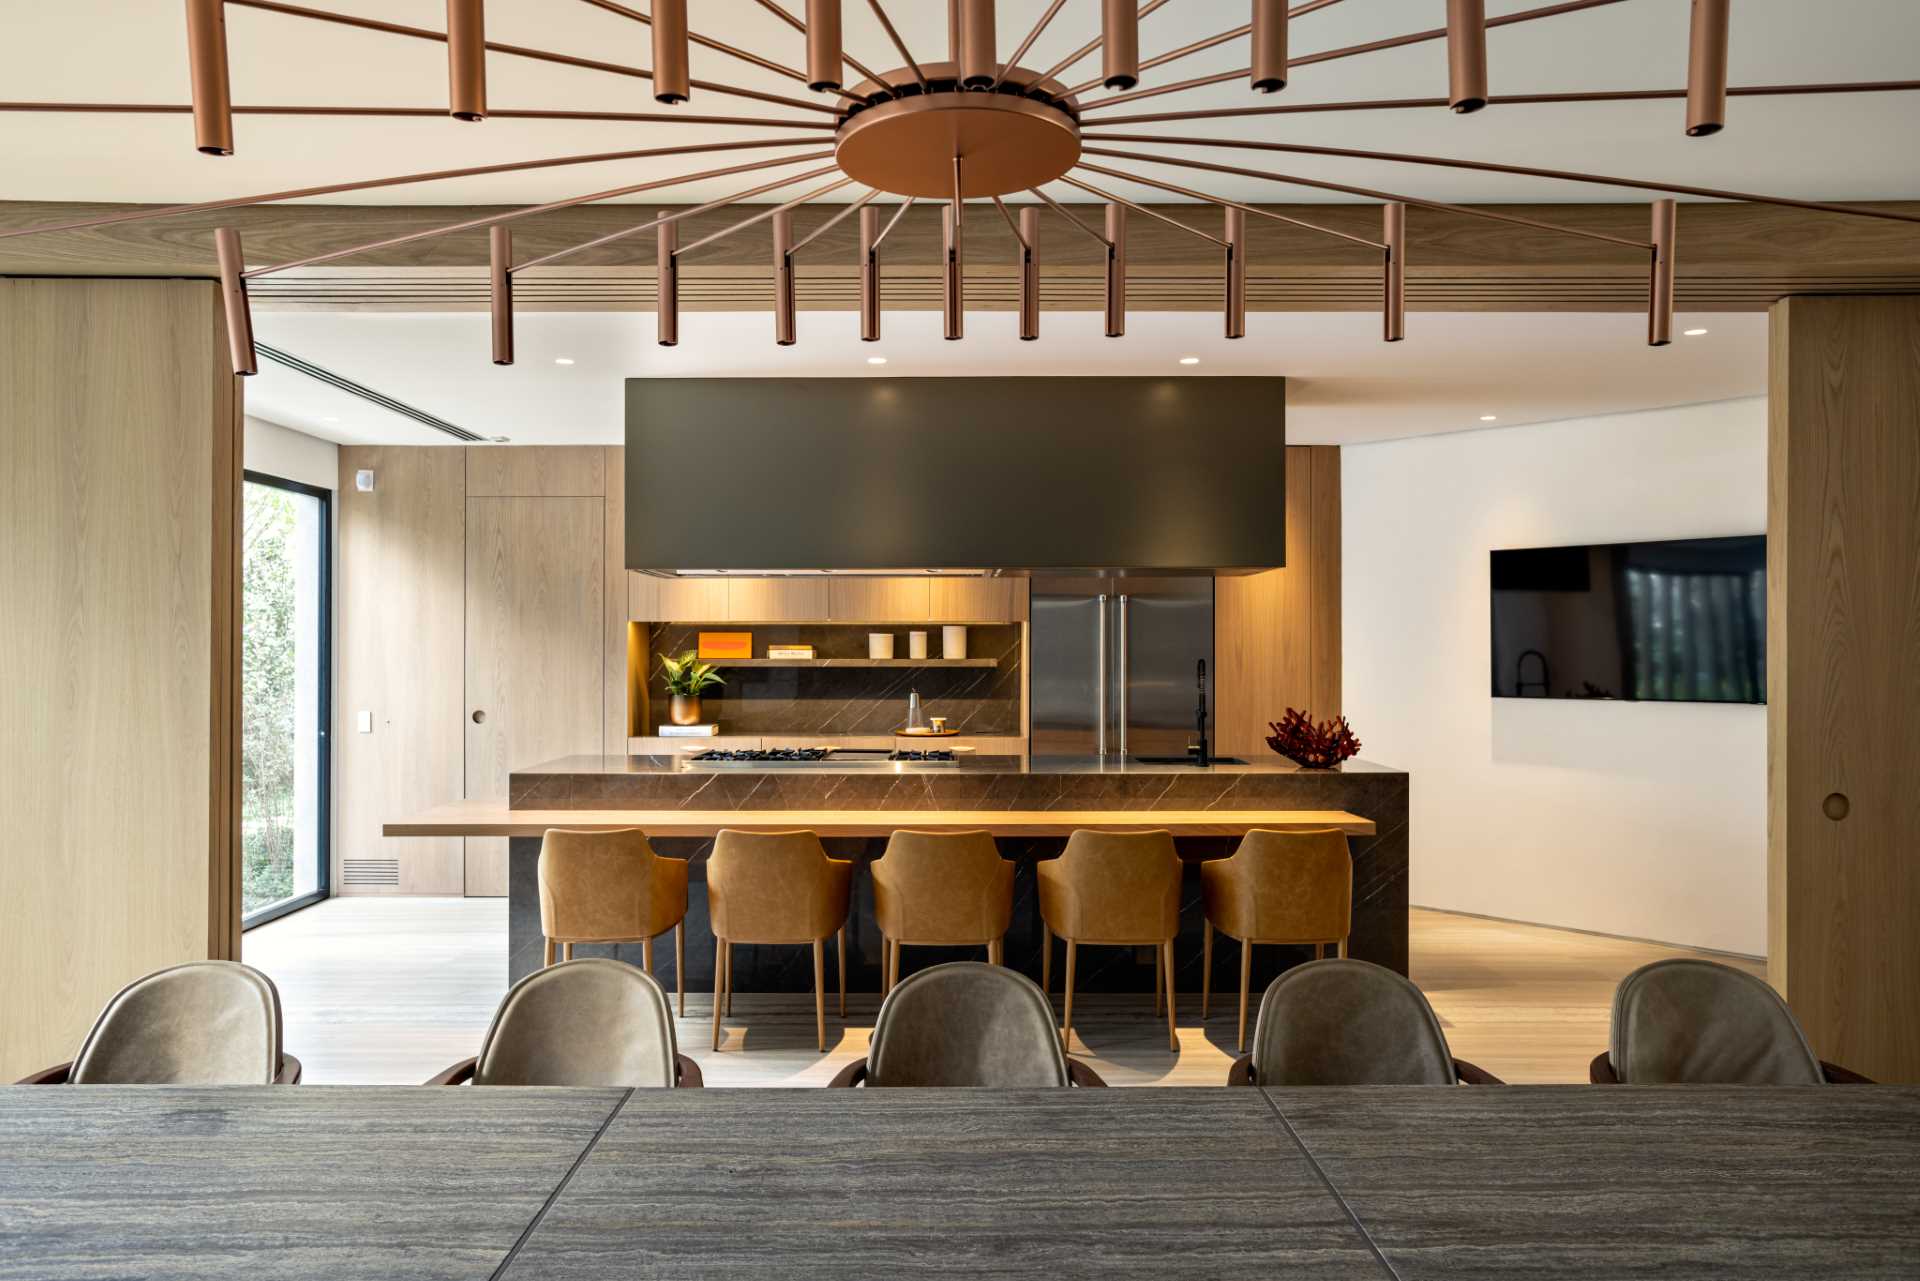 درهای چوبی کشویی اتاق غذاخوری رسمی را از آشپزخانه جدا می کند.  در آشپزخانه یک جزیره بزرگ با میز چوبی پایینی وجود دارد که افراد می توانند روی آن بنشینند.